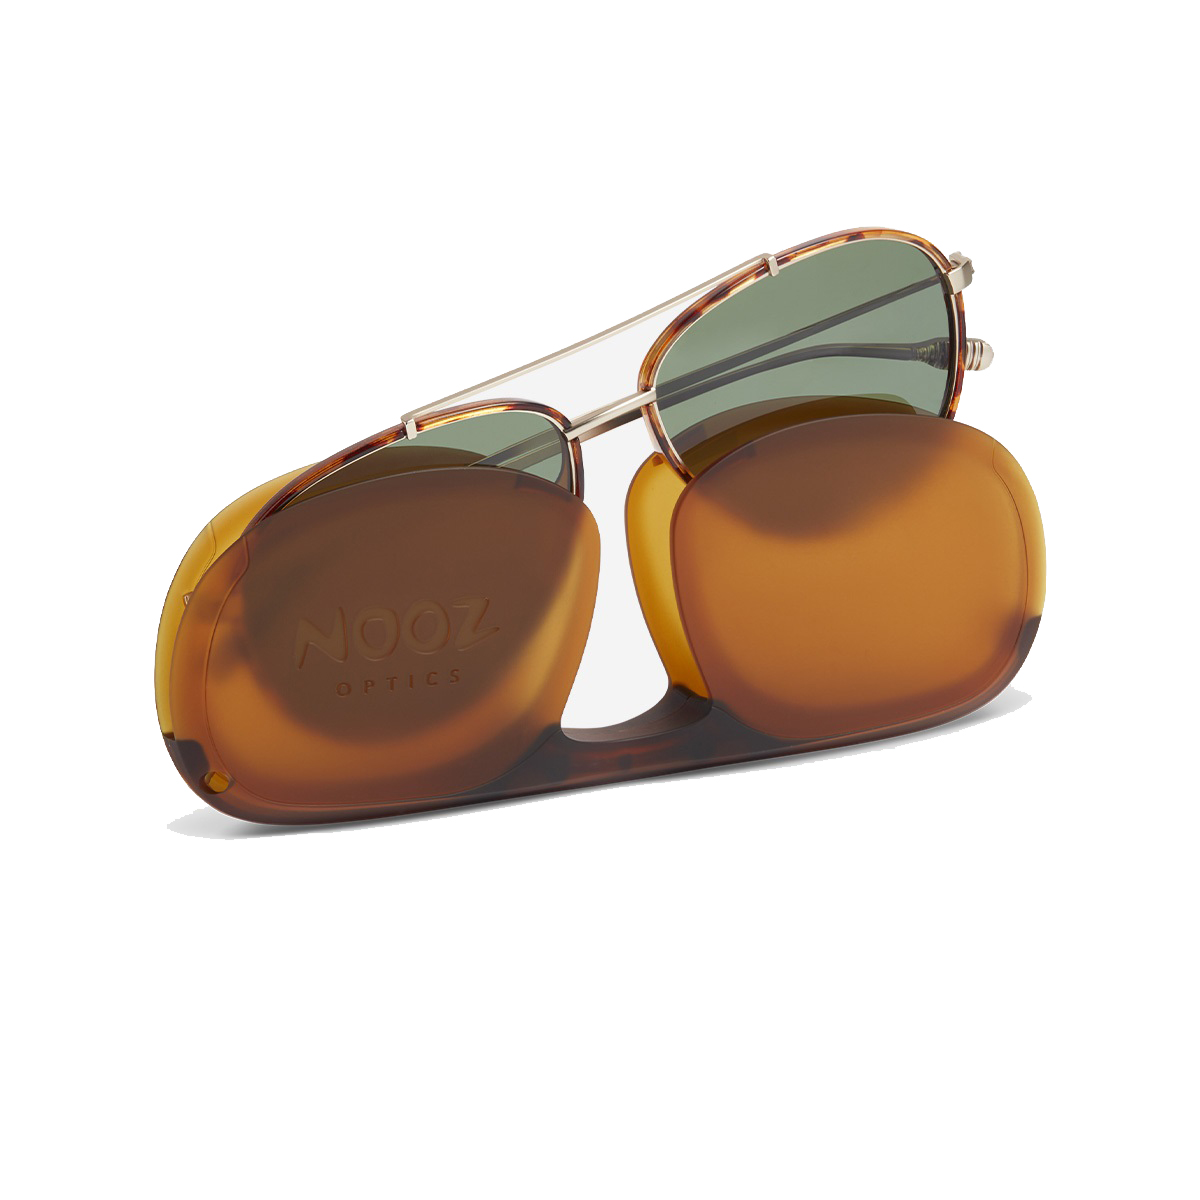 Nooz - Sunglasses - Jet - Tortoise